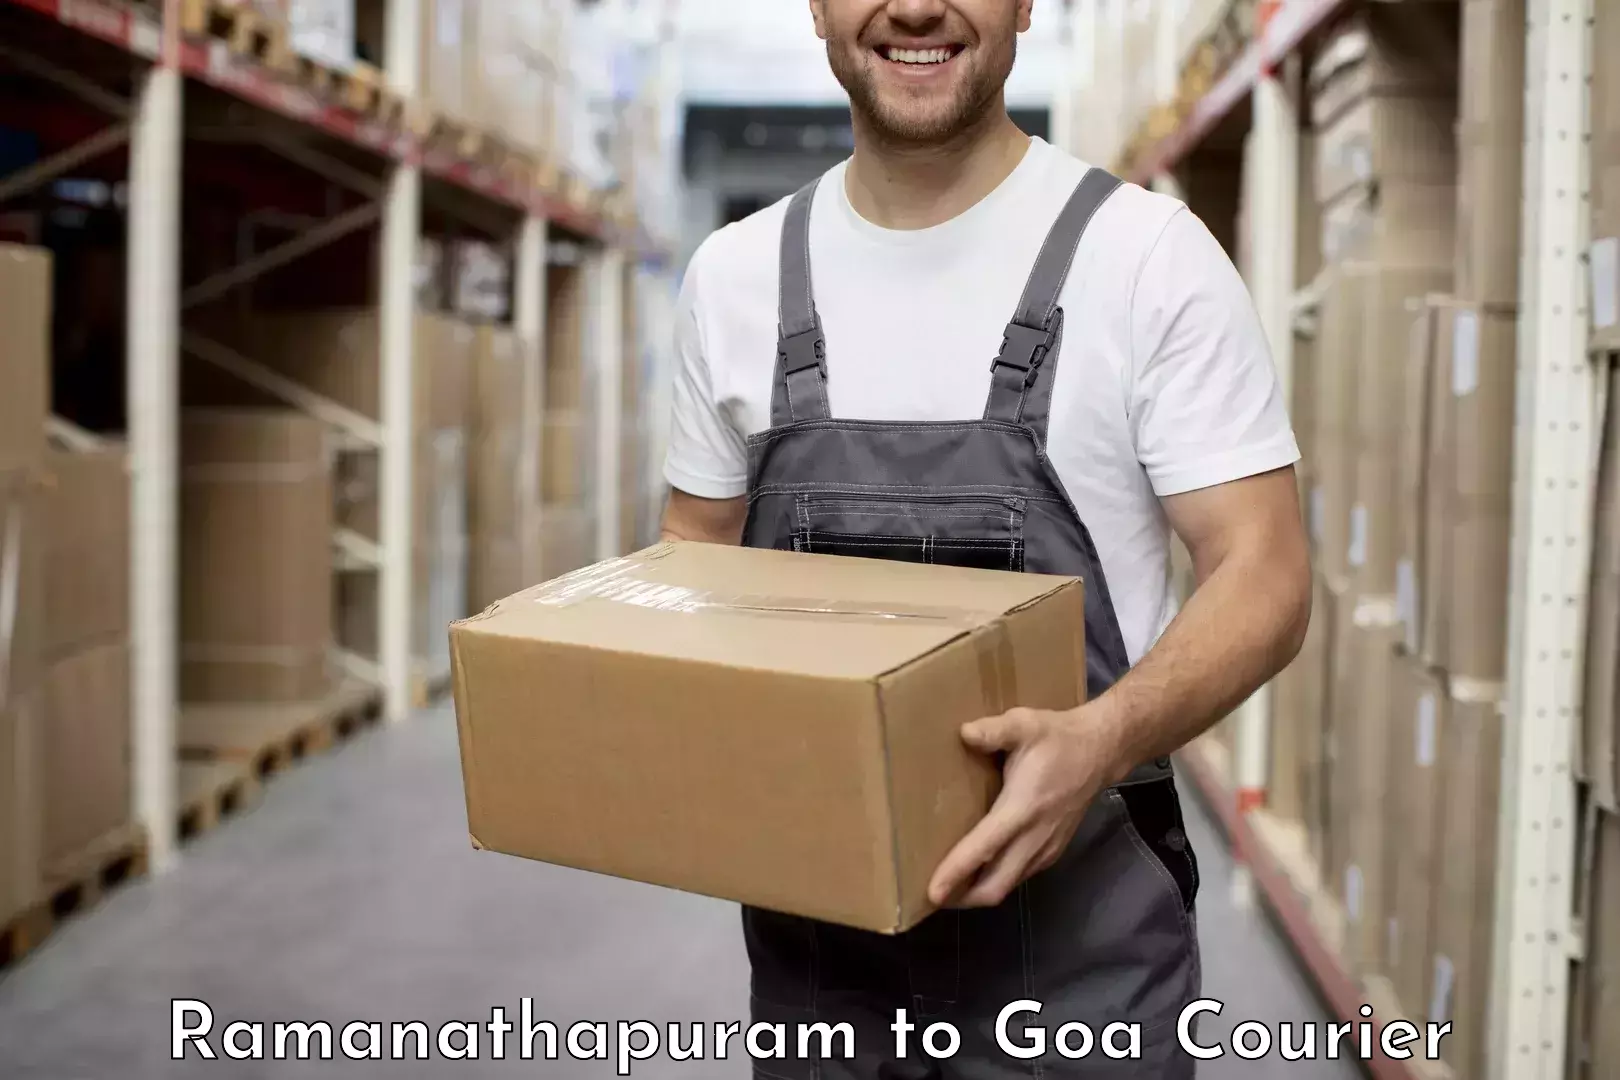 Parcel service for businesses Ramanathapuram to Vasco da Gama